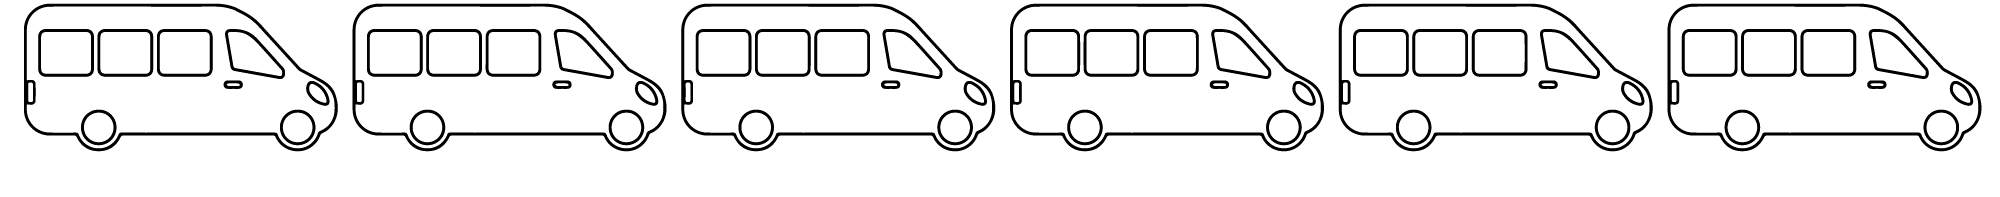 strektegning av minibusser